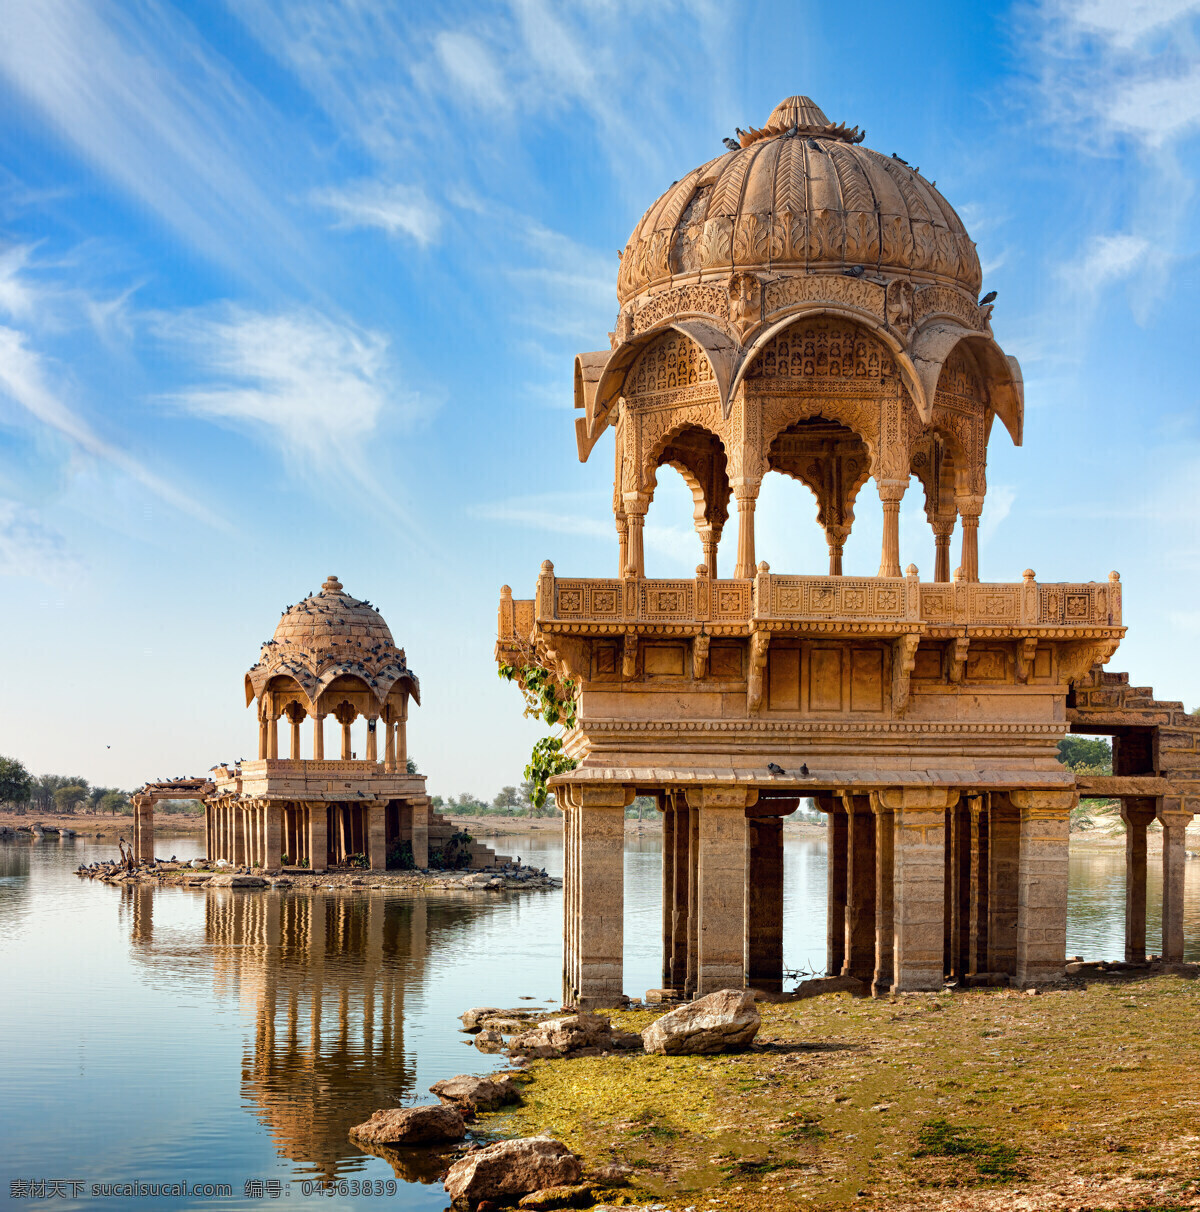 印度萨加尔 印度 拉贾斯坦 旅游 印度旅游 印度建筑 古代建筑 国外旅游 旅游摄影 棕色